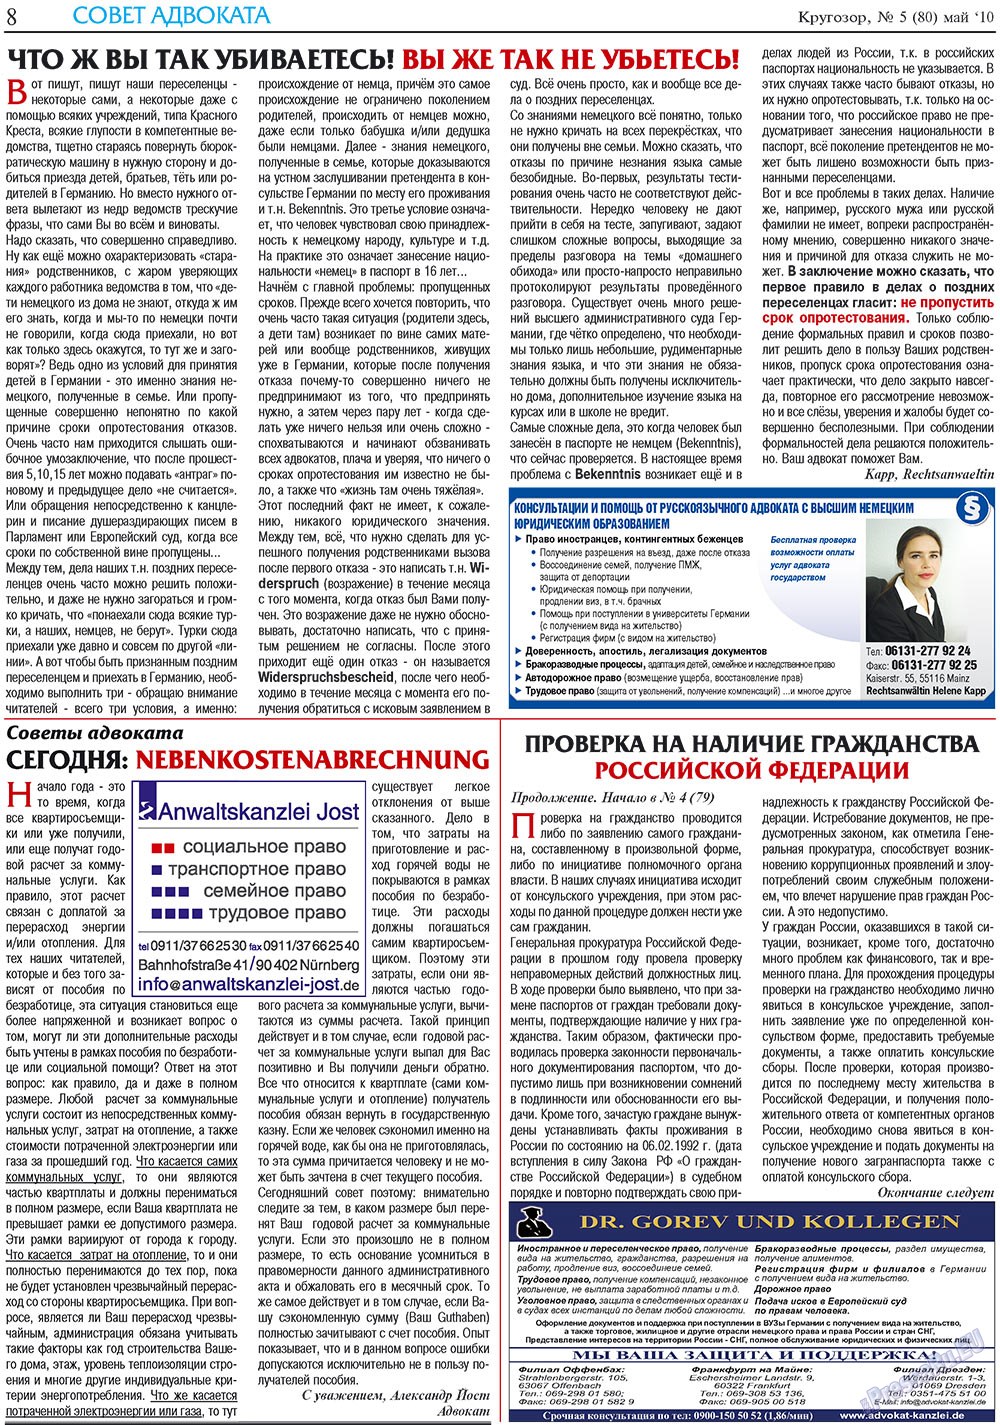 Кругозор плюс!, газета. 2010 №5 стр.8